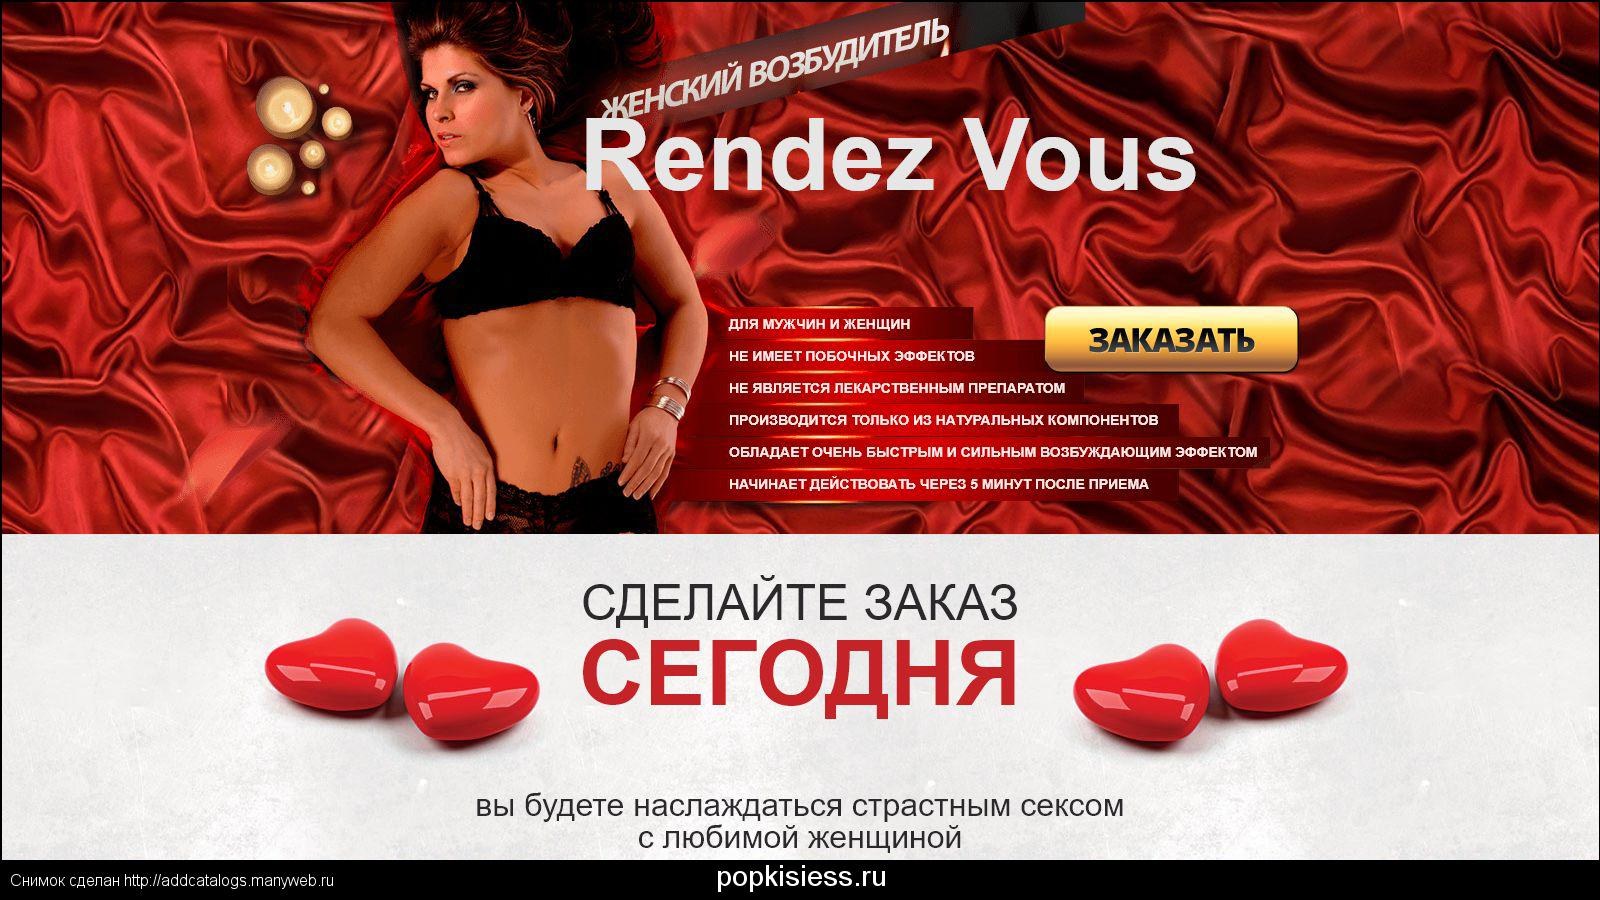 Секс знакомства №1 (г. Уссурийск) – сайт бесплатных знакомств для секса и интима с фото